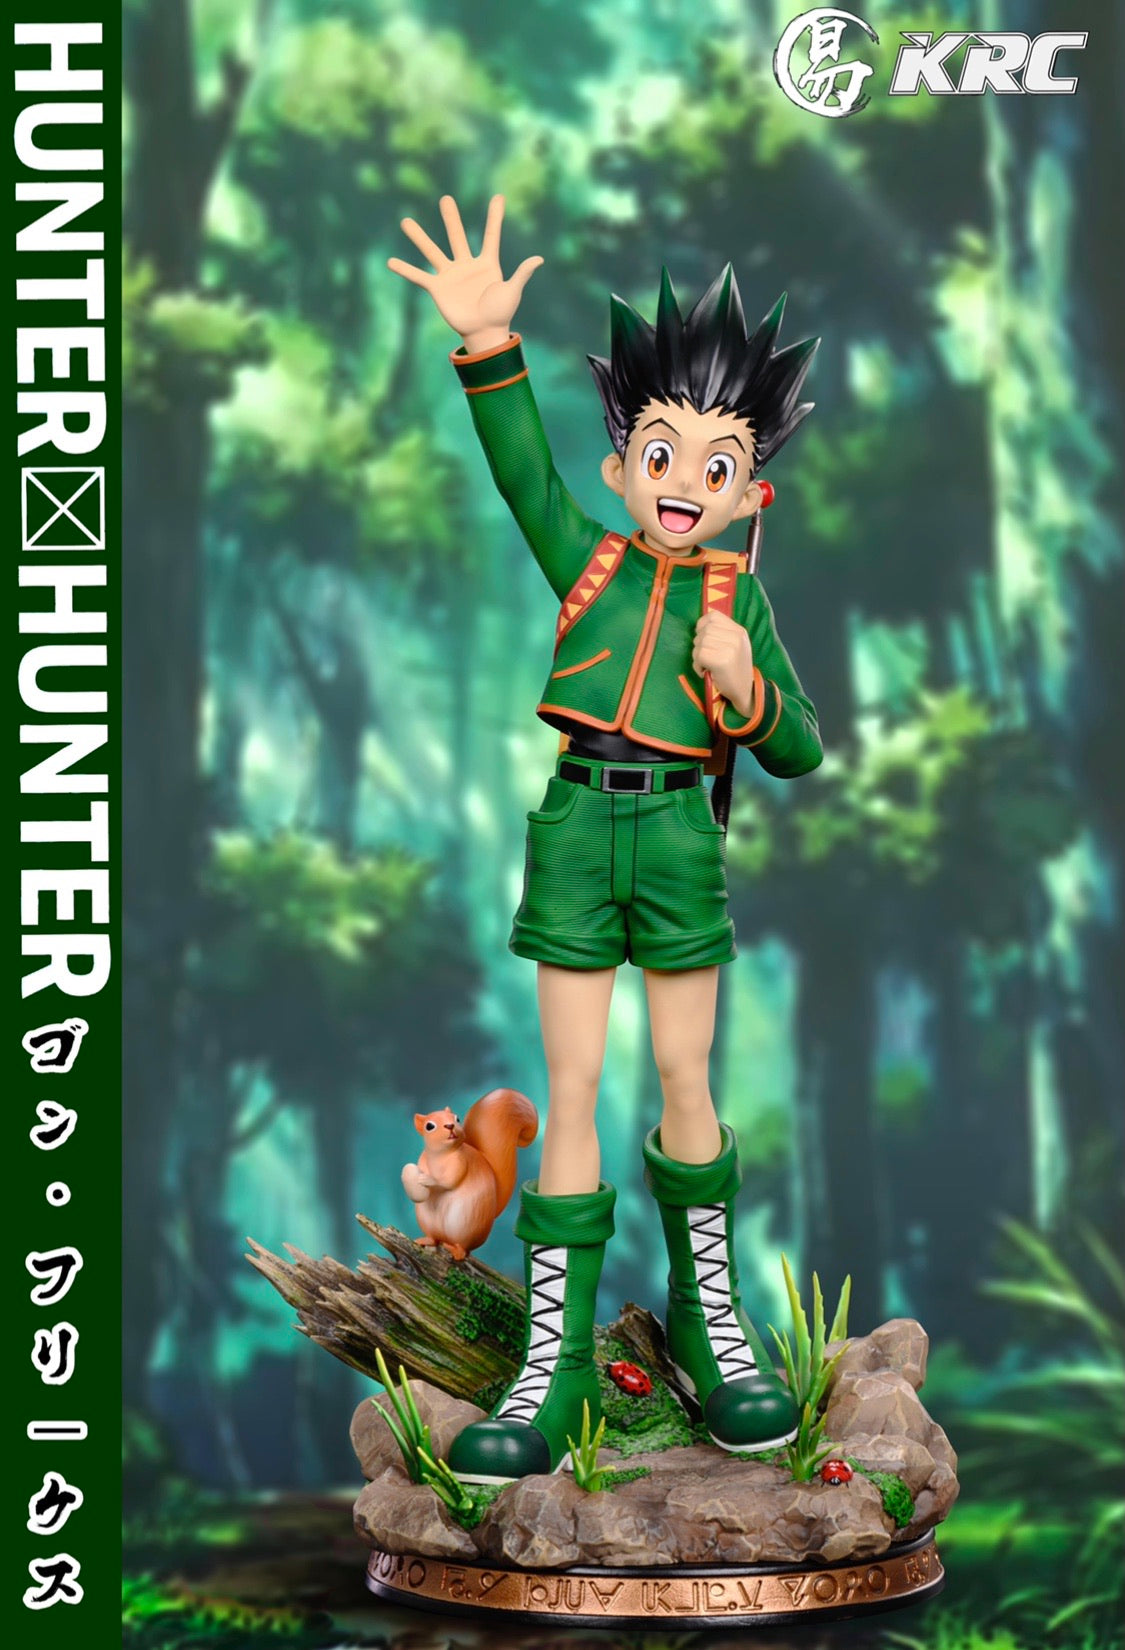 New In Stock 1/6 Anime Hunter X Hunter Kite Figures Gk Toy Model